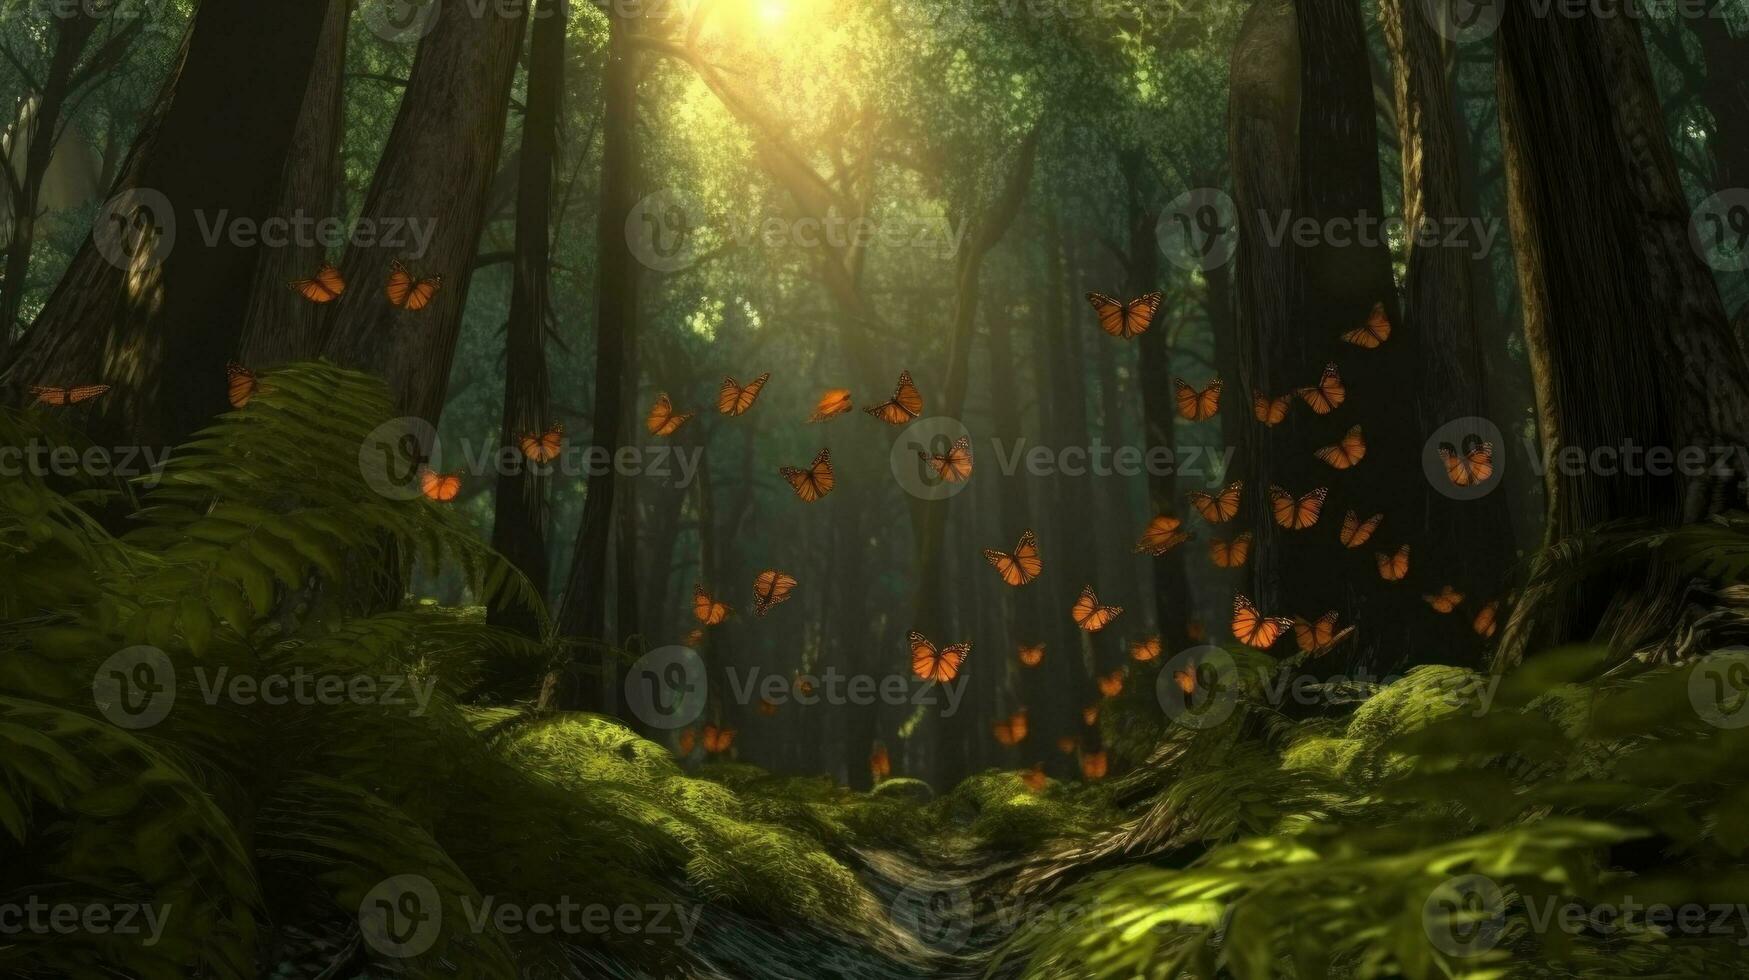 de migration av monark fjärilar genom de skog foto